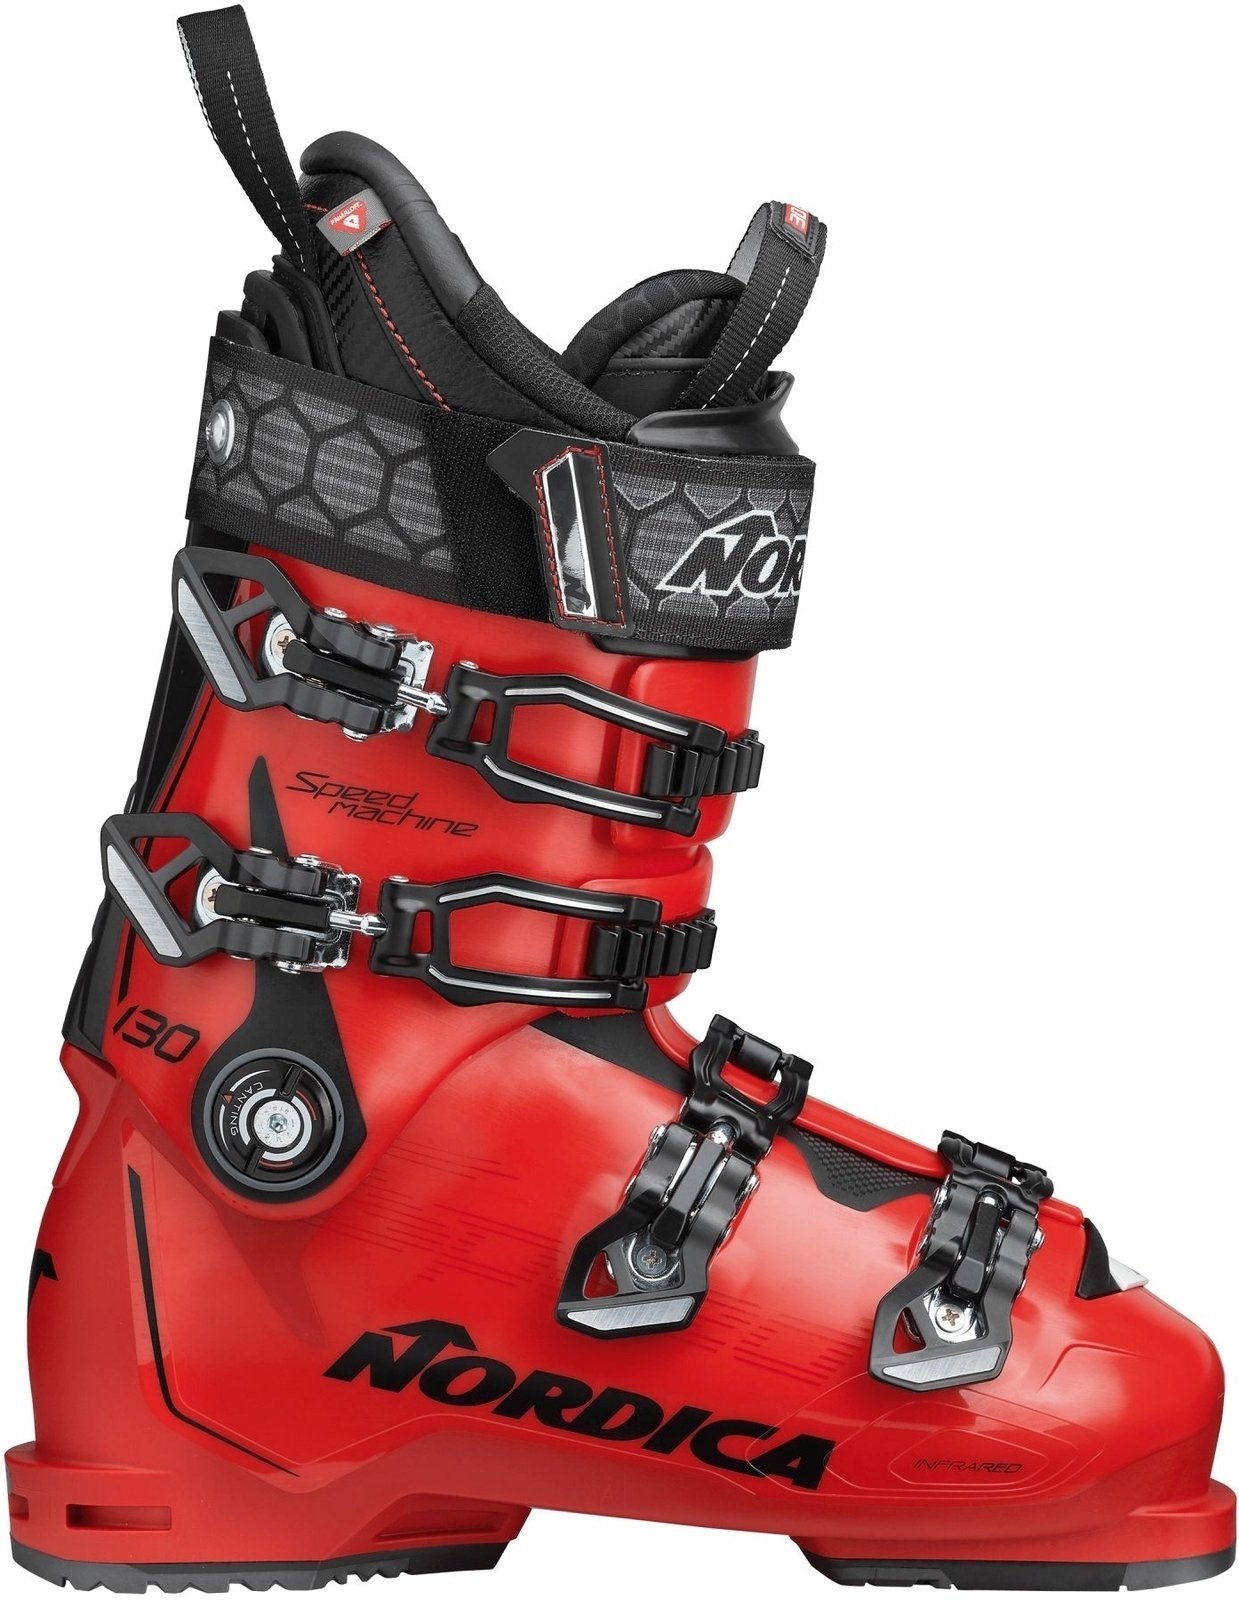 Μπότες Σκι Alpine Nordica Speedmachine Κόκκινο-Μαύρο 290 Μπότες Σκι Alpine